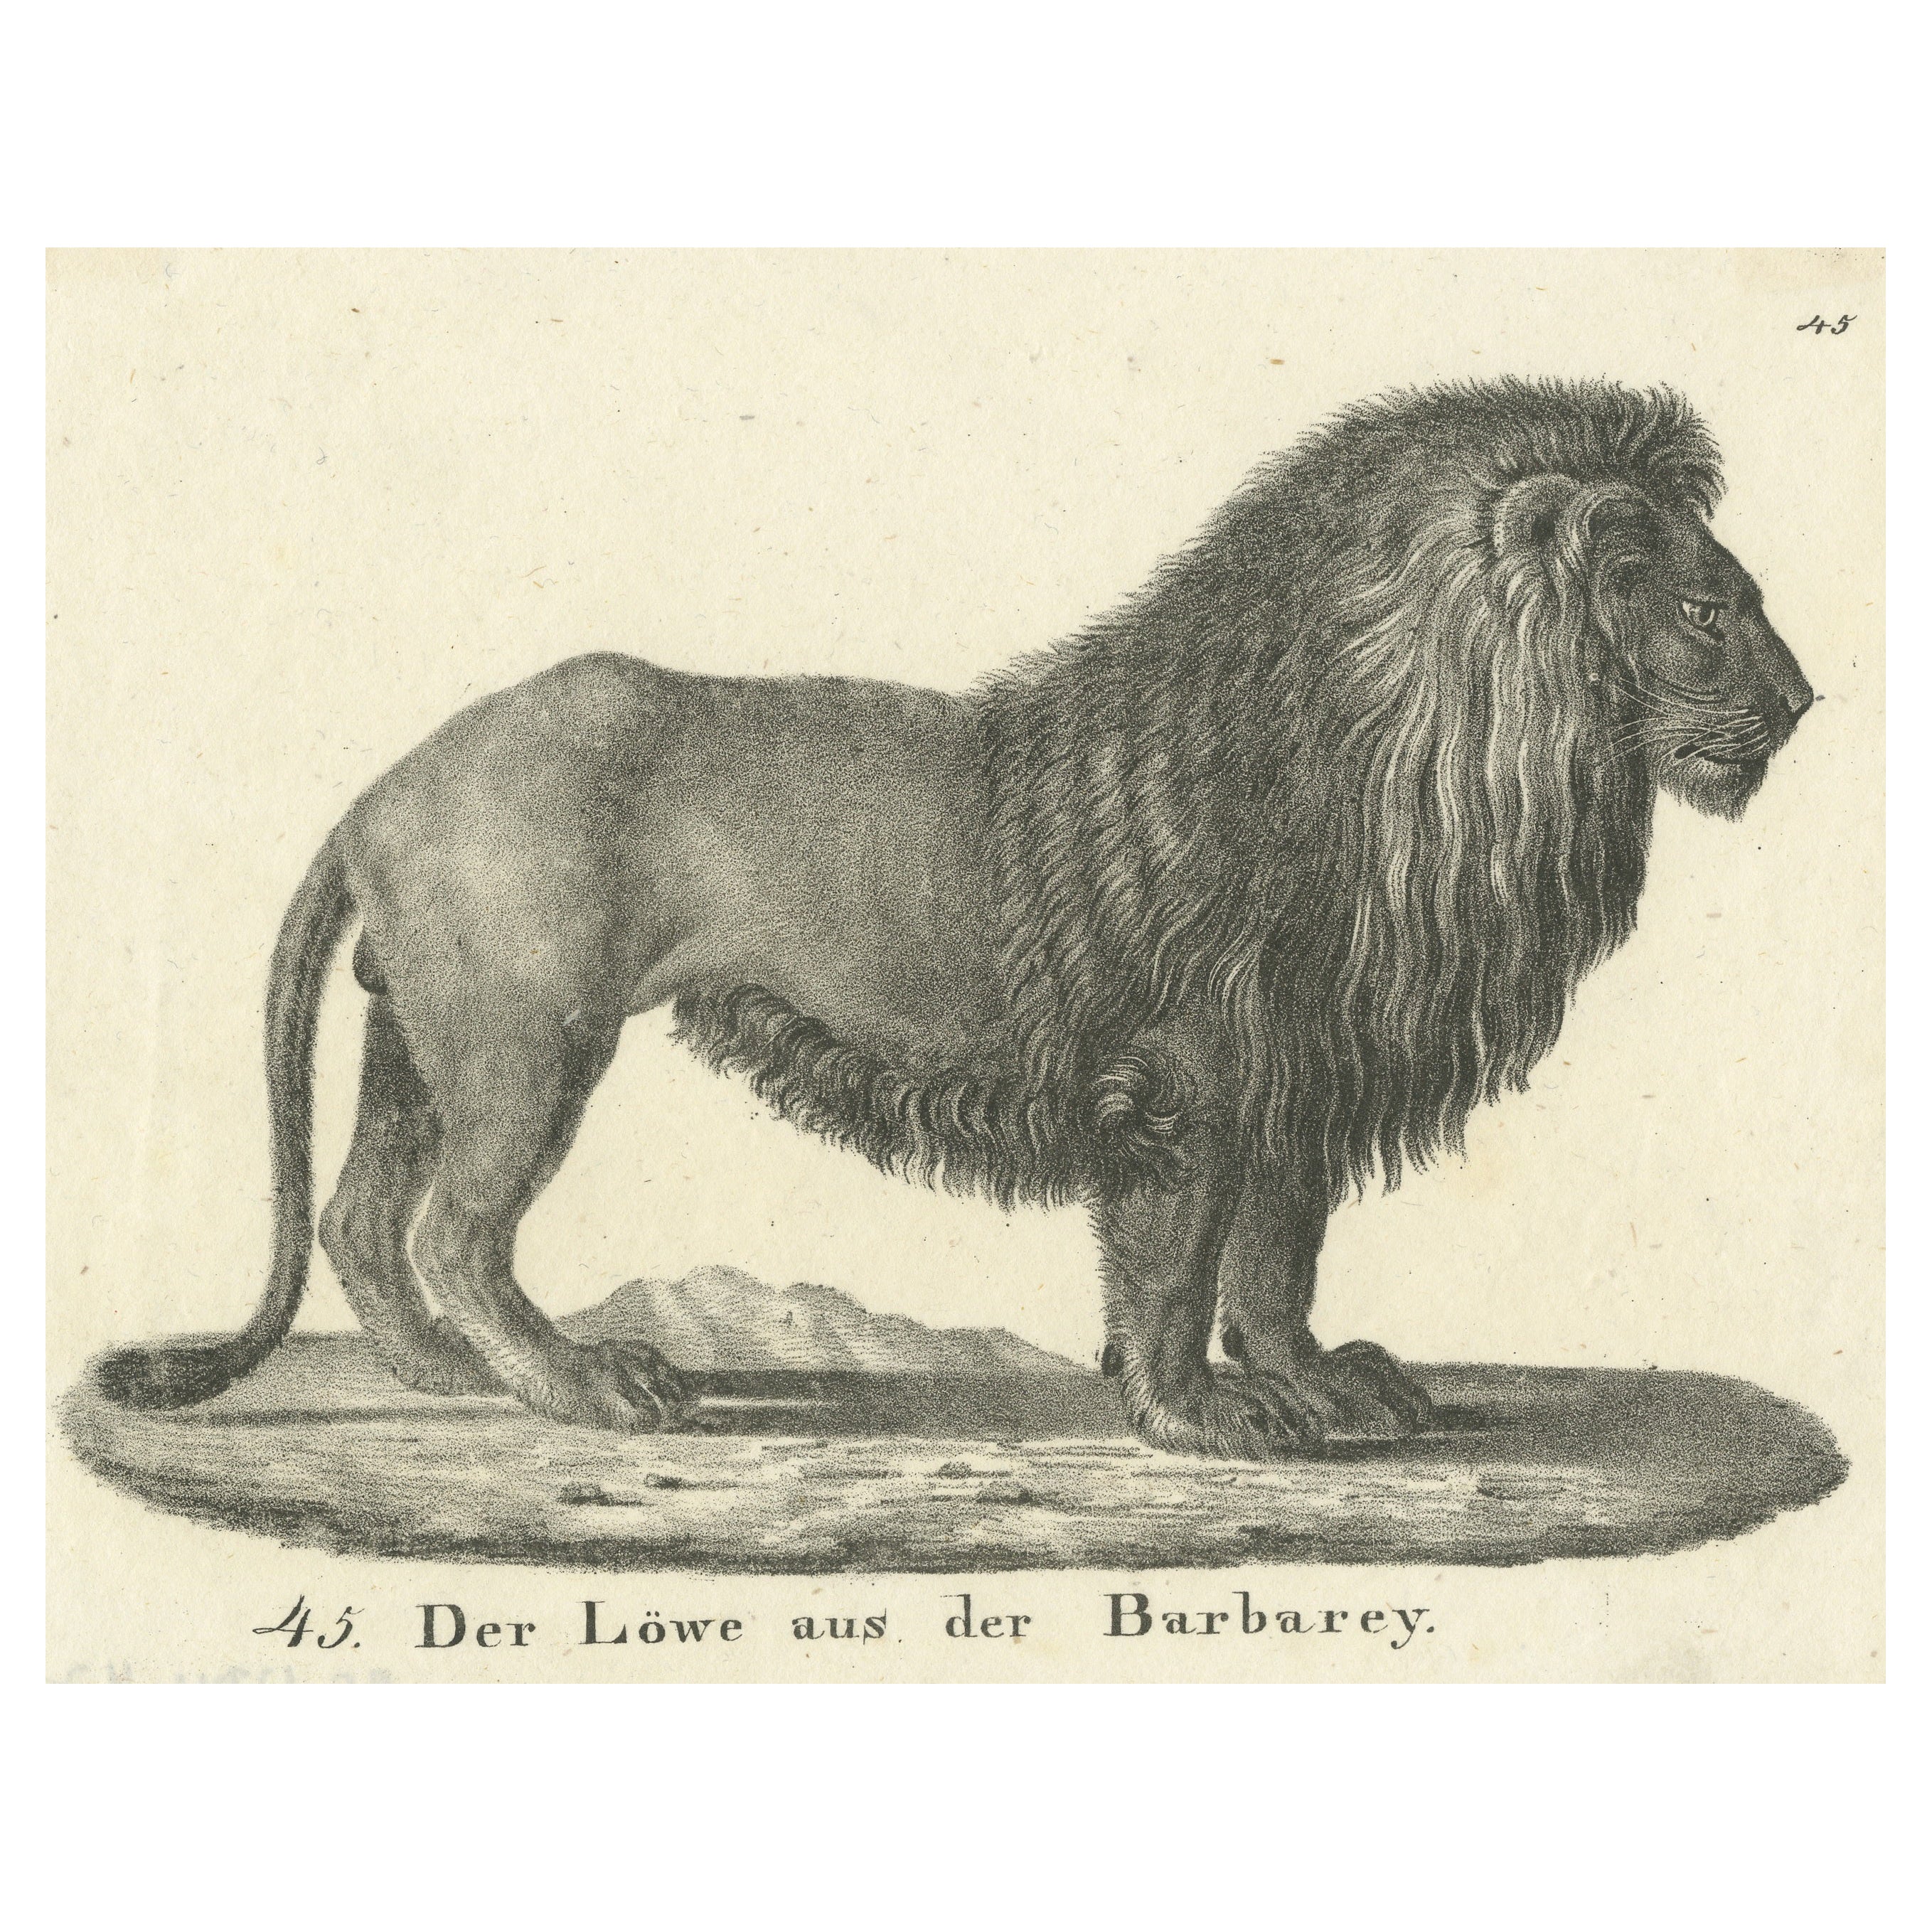 Original Antique Print of a Barbary Lion